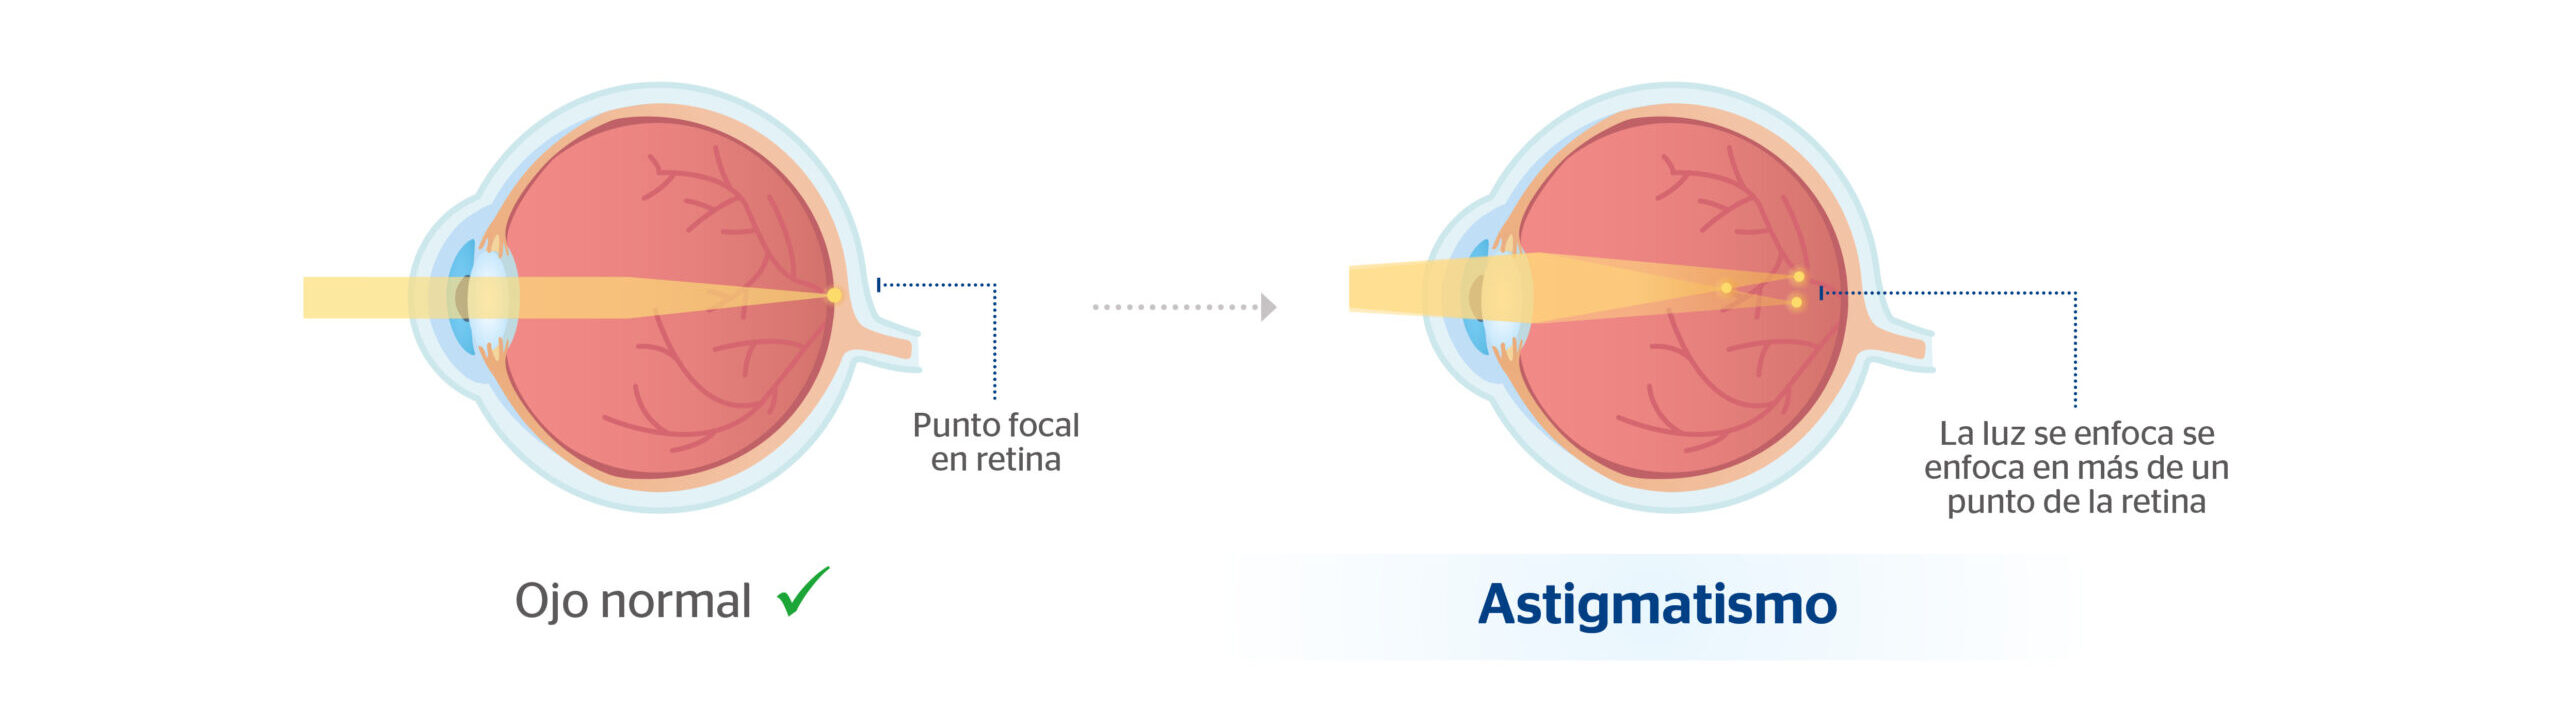 Ojo con astigmatismo y ojo normal